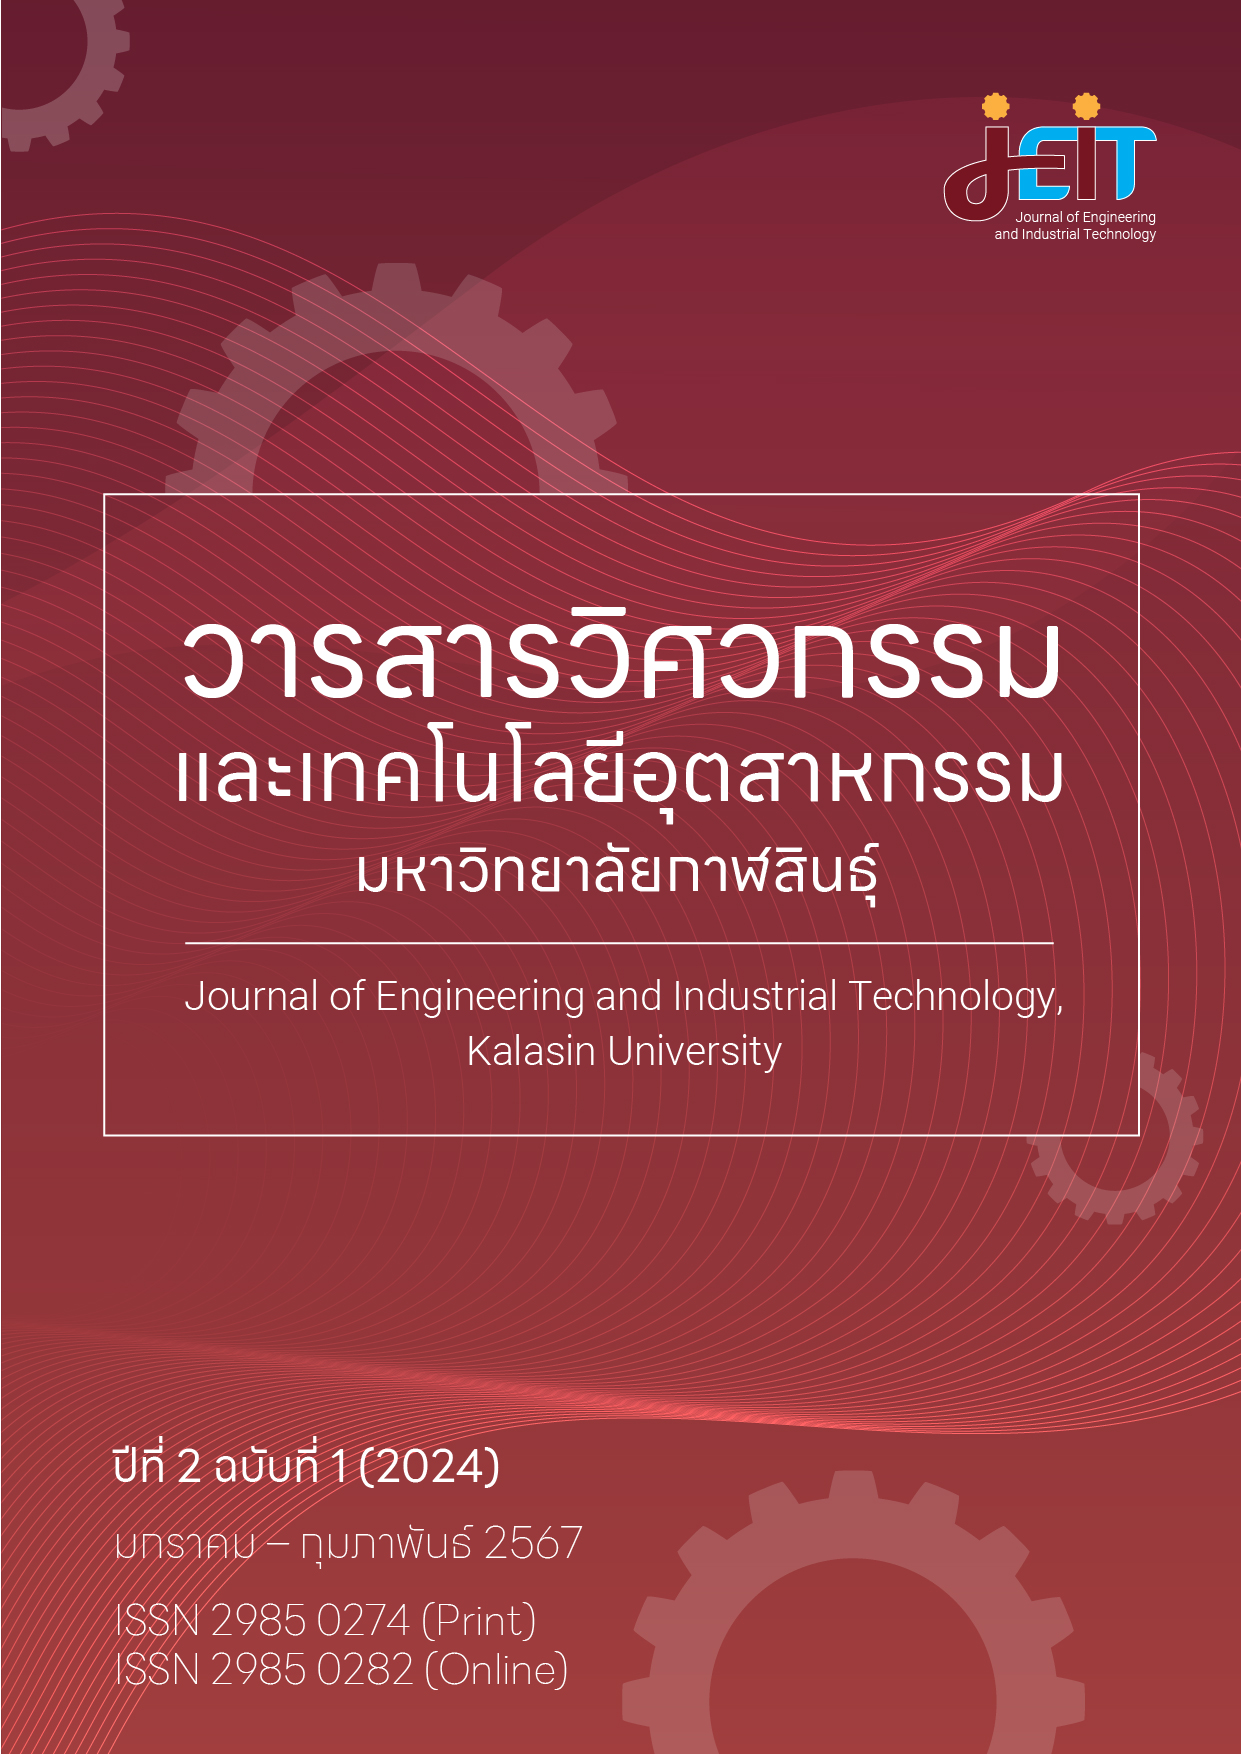 					ดู ปีที่ 2 ฉบับที่ 1 (2024): วารสารวิศวกรรมและเทคโนโลยีอุตสาหกรรม มหาวิทยาลัยกาฬสินธุ์ ปีที่ 2 ฉบับที่ 1 (มกราคม - กุมภาพันธ์ 2567)
				